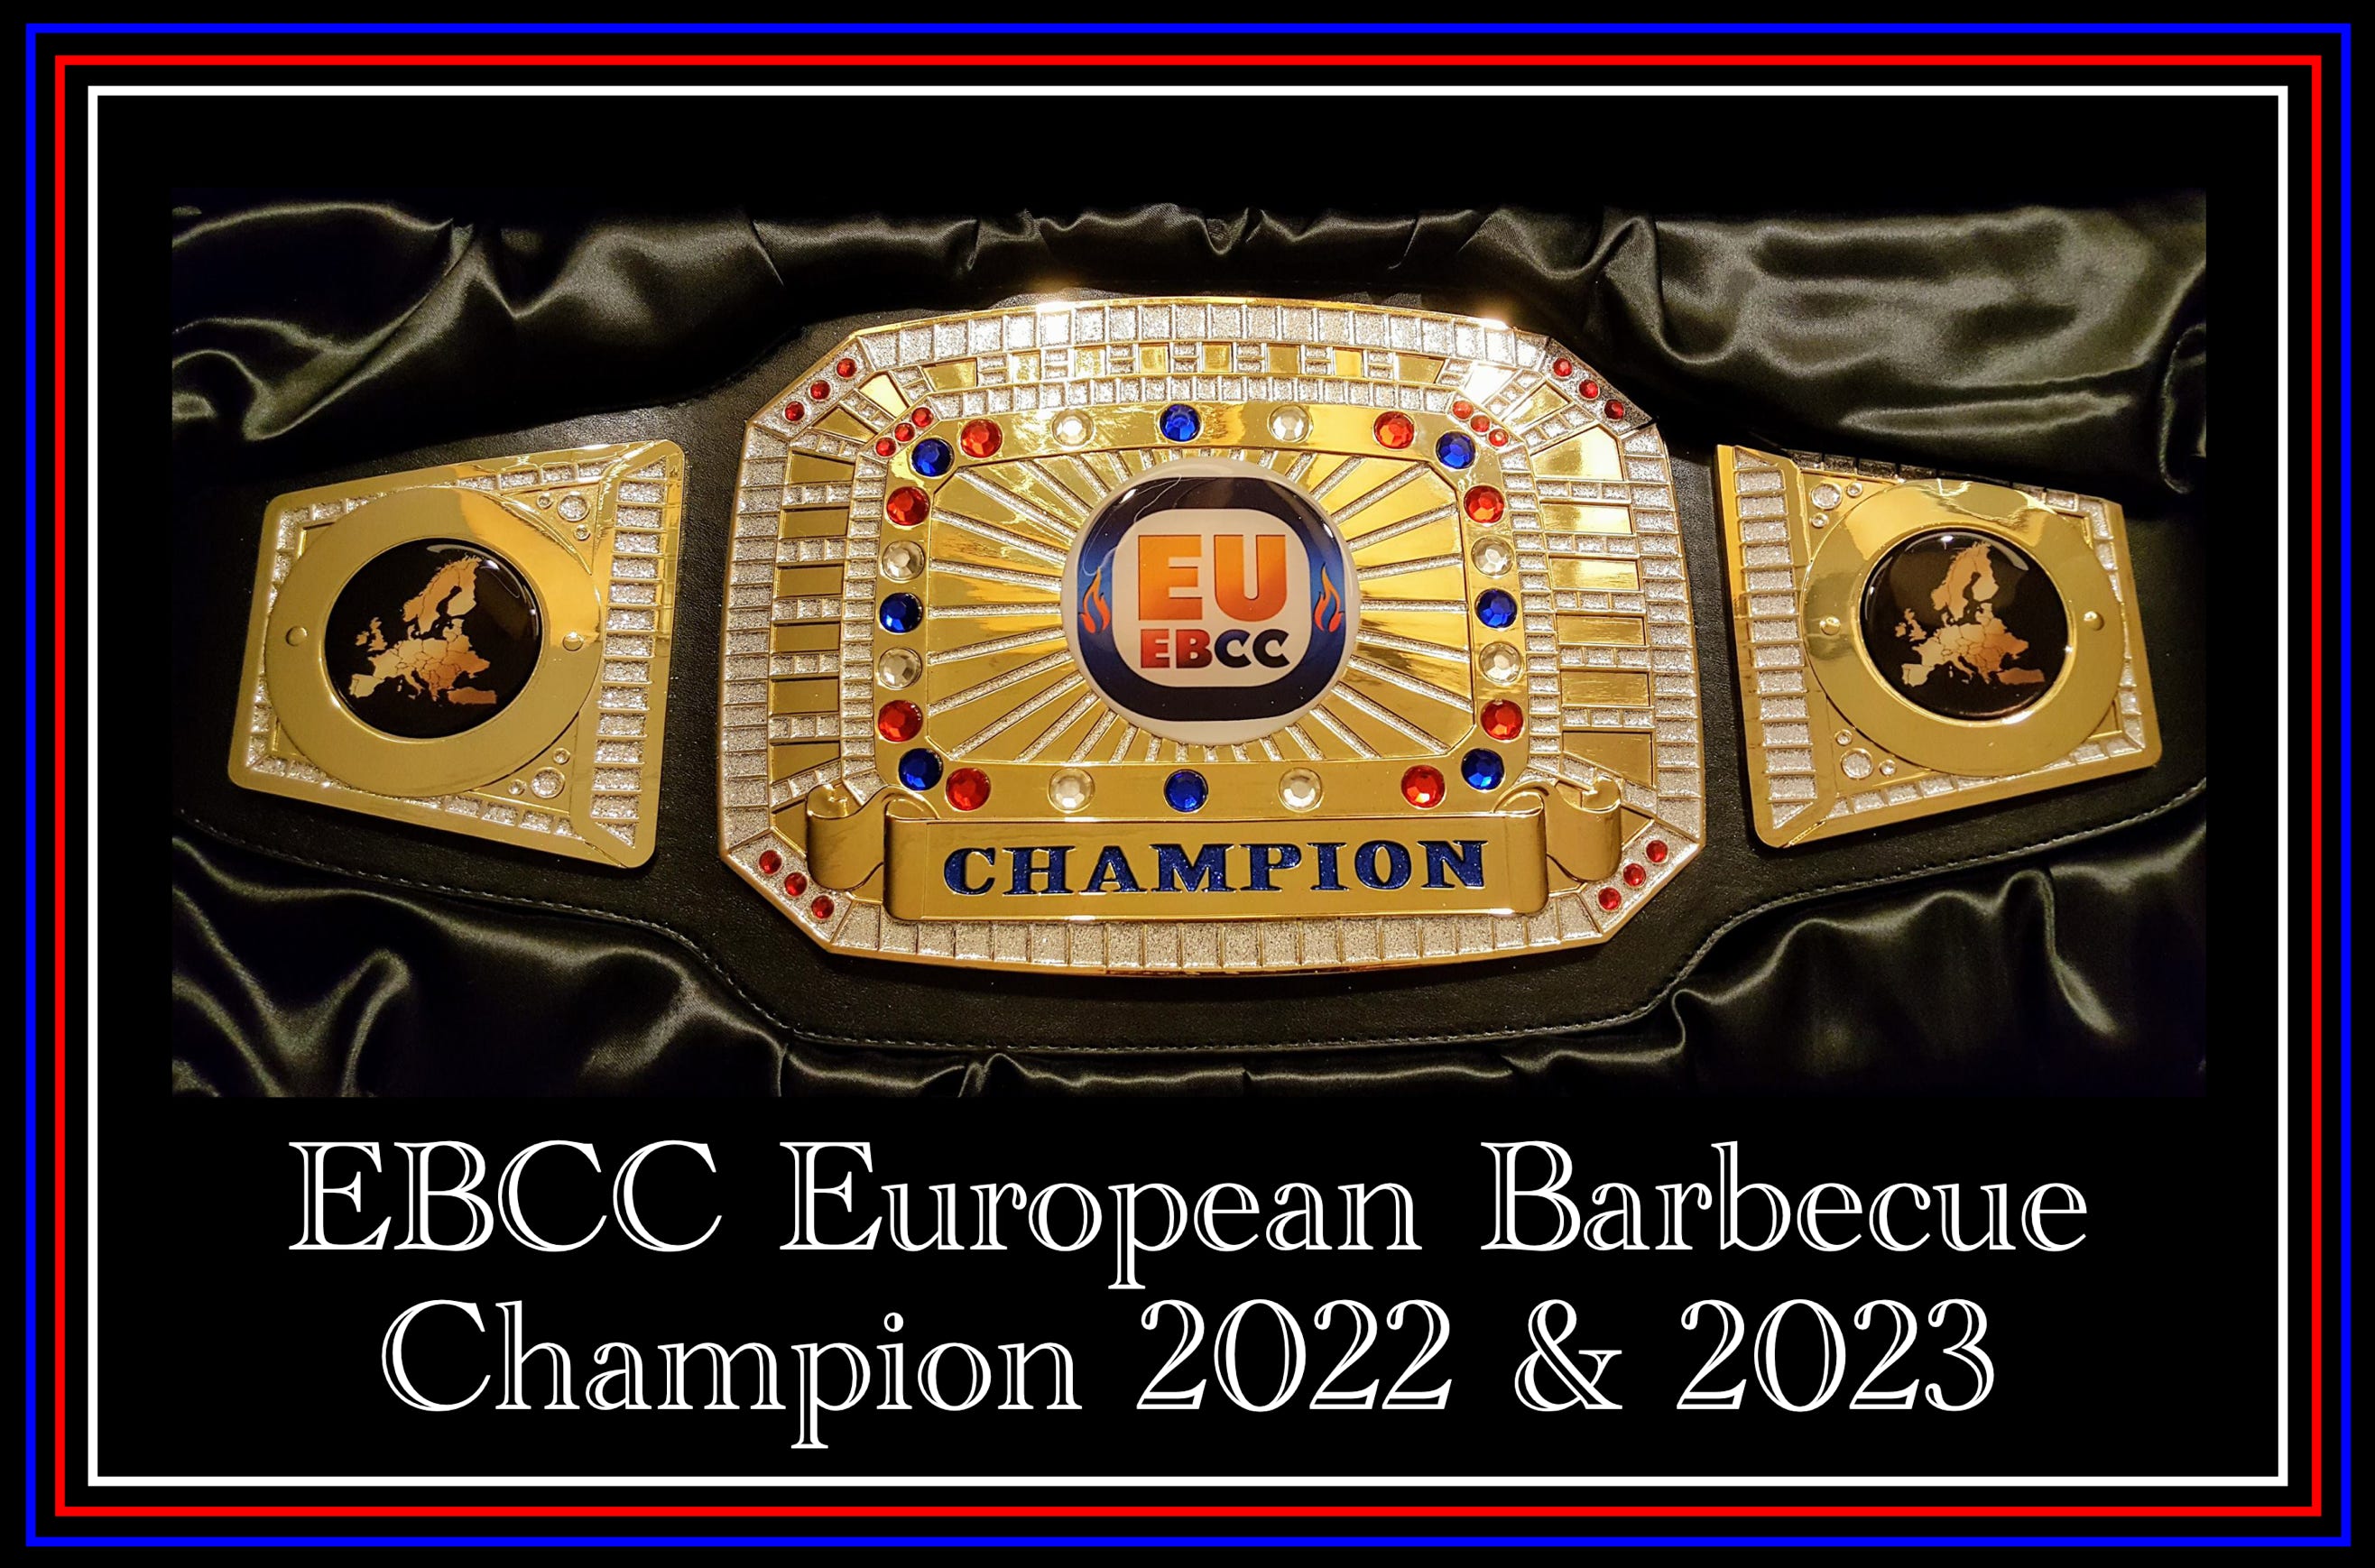 EBCC European Barbecue Champion, zum ersten mal in der Geschichte ging der Barbecue Champion nach Österreich, Cooklounge BBQ, Geri Hochgatterer ist BBQ Europameister, 